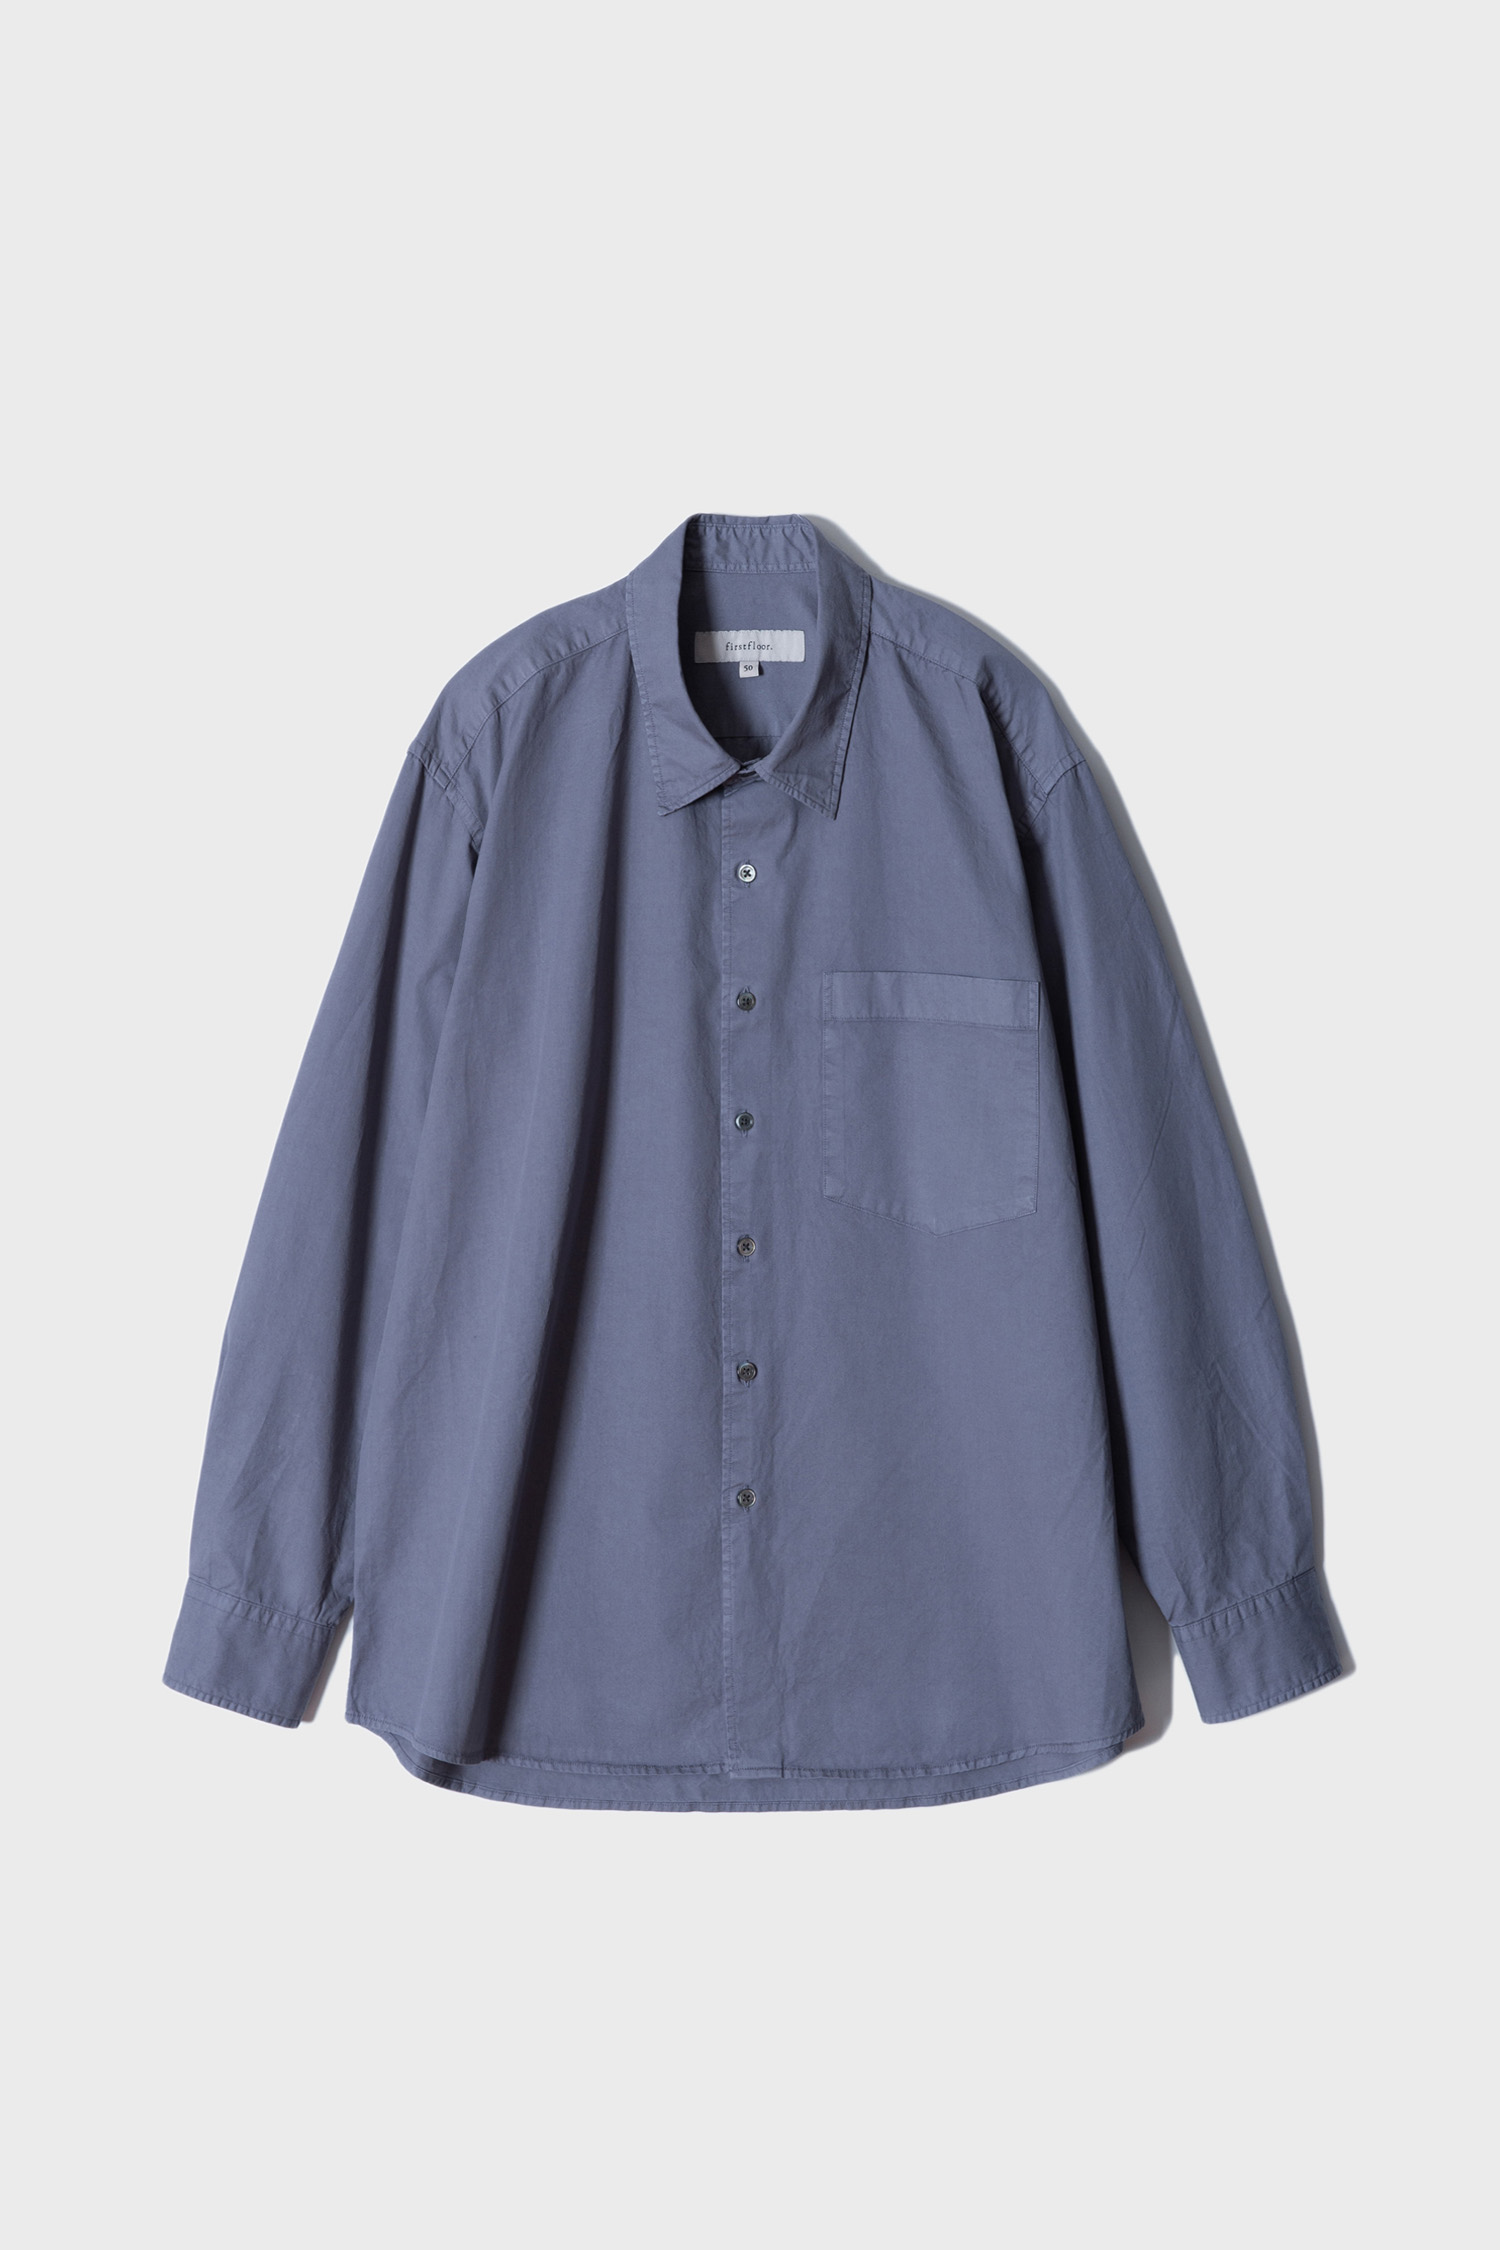 [한정수량] Dyed shirt (Petit size, 4 colors)